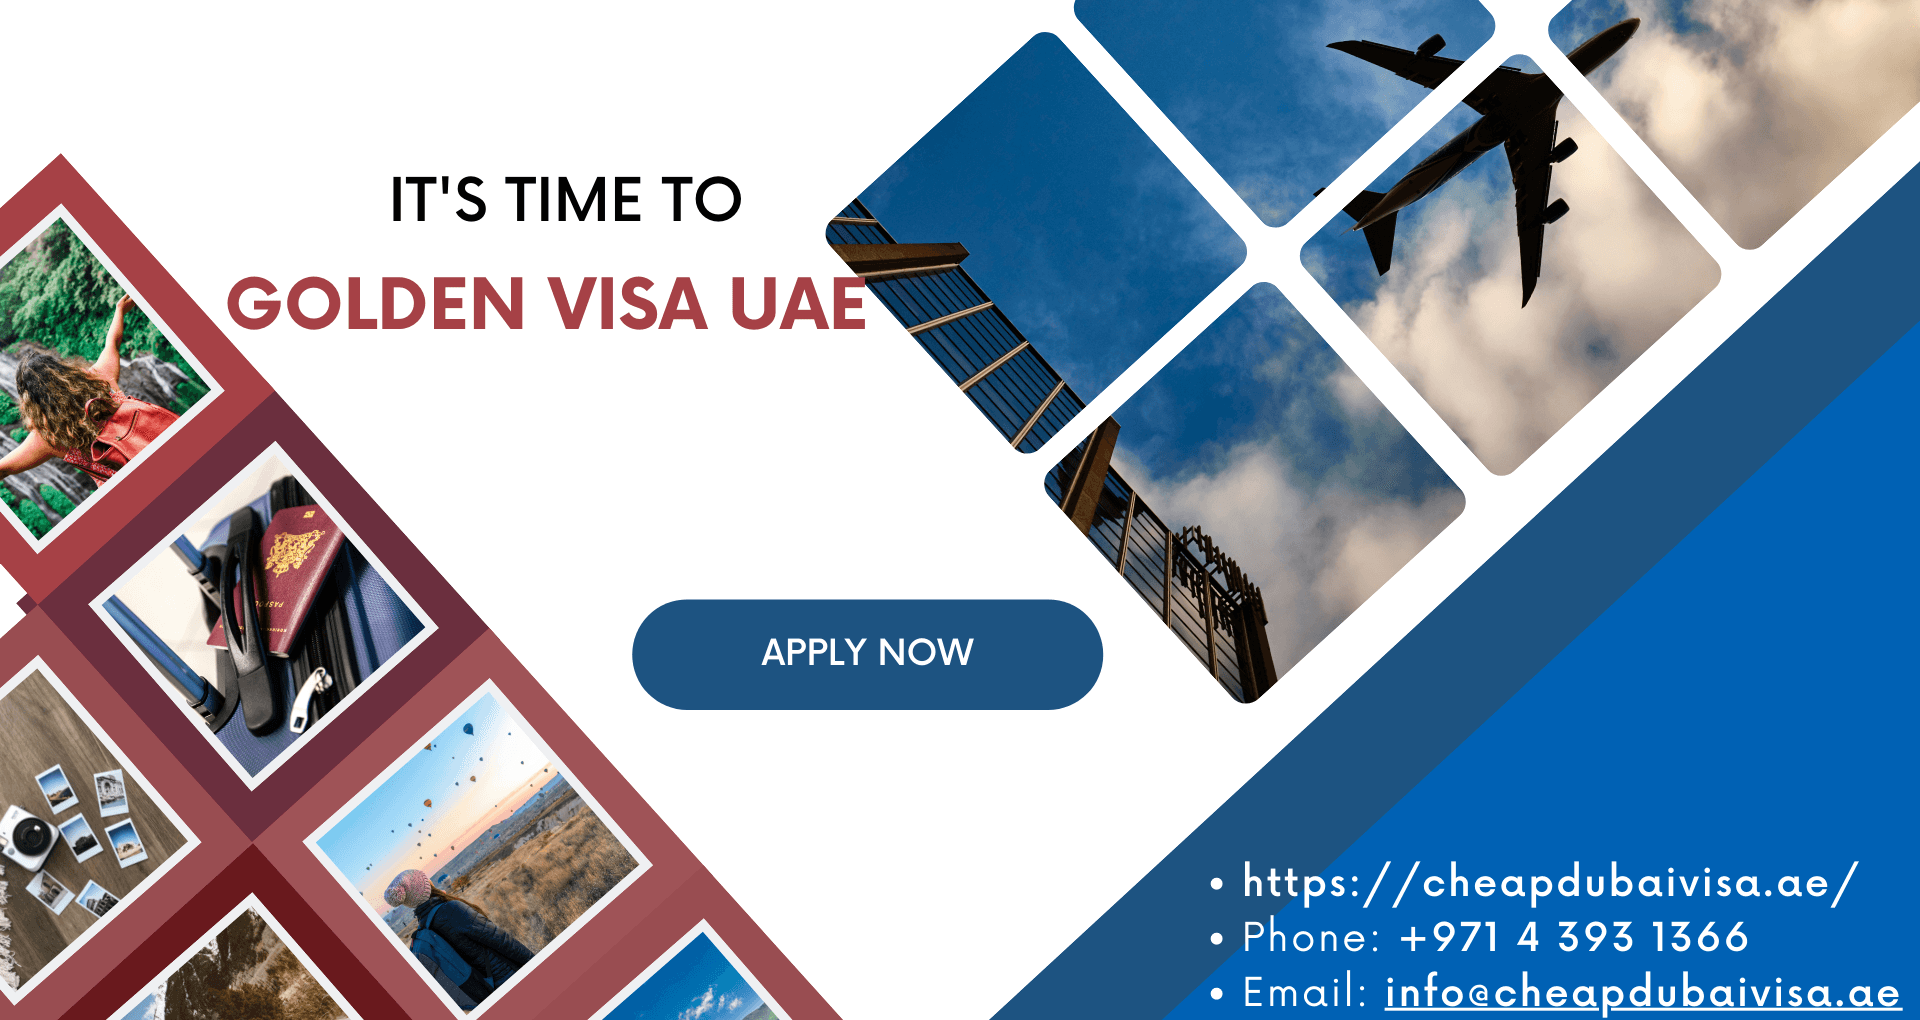 Golden visa UAE